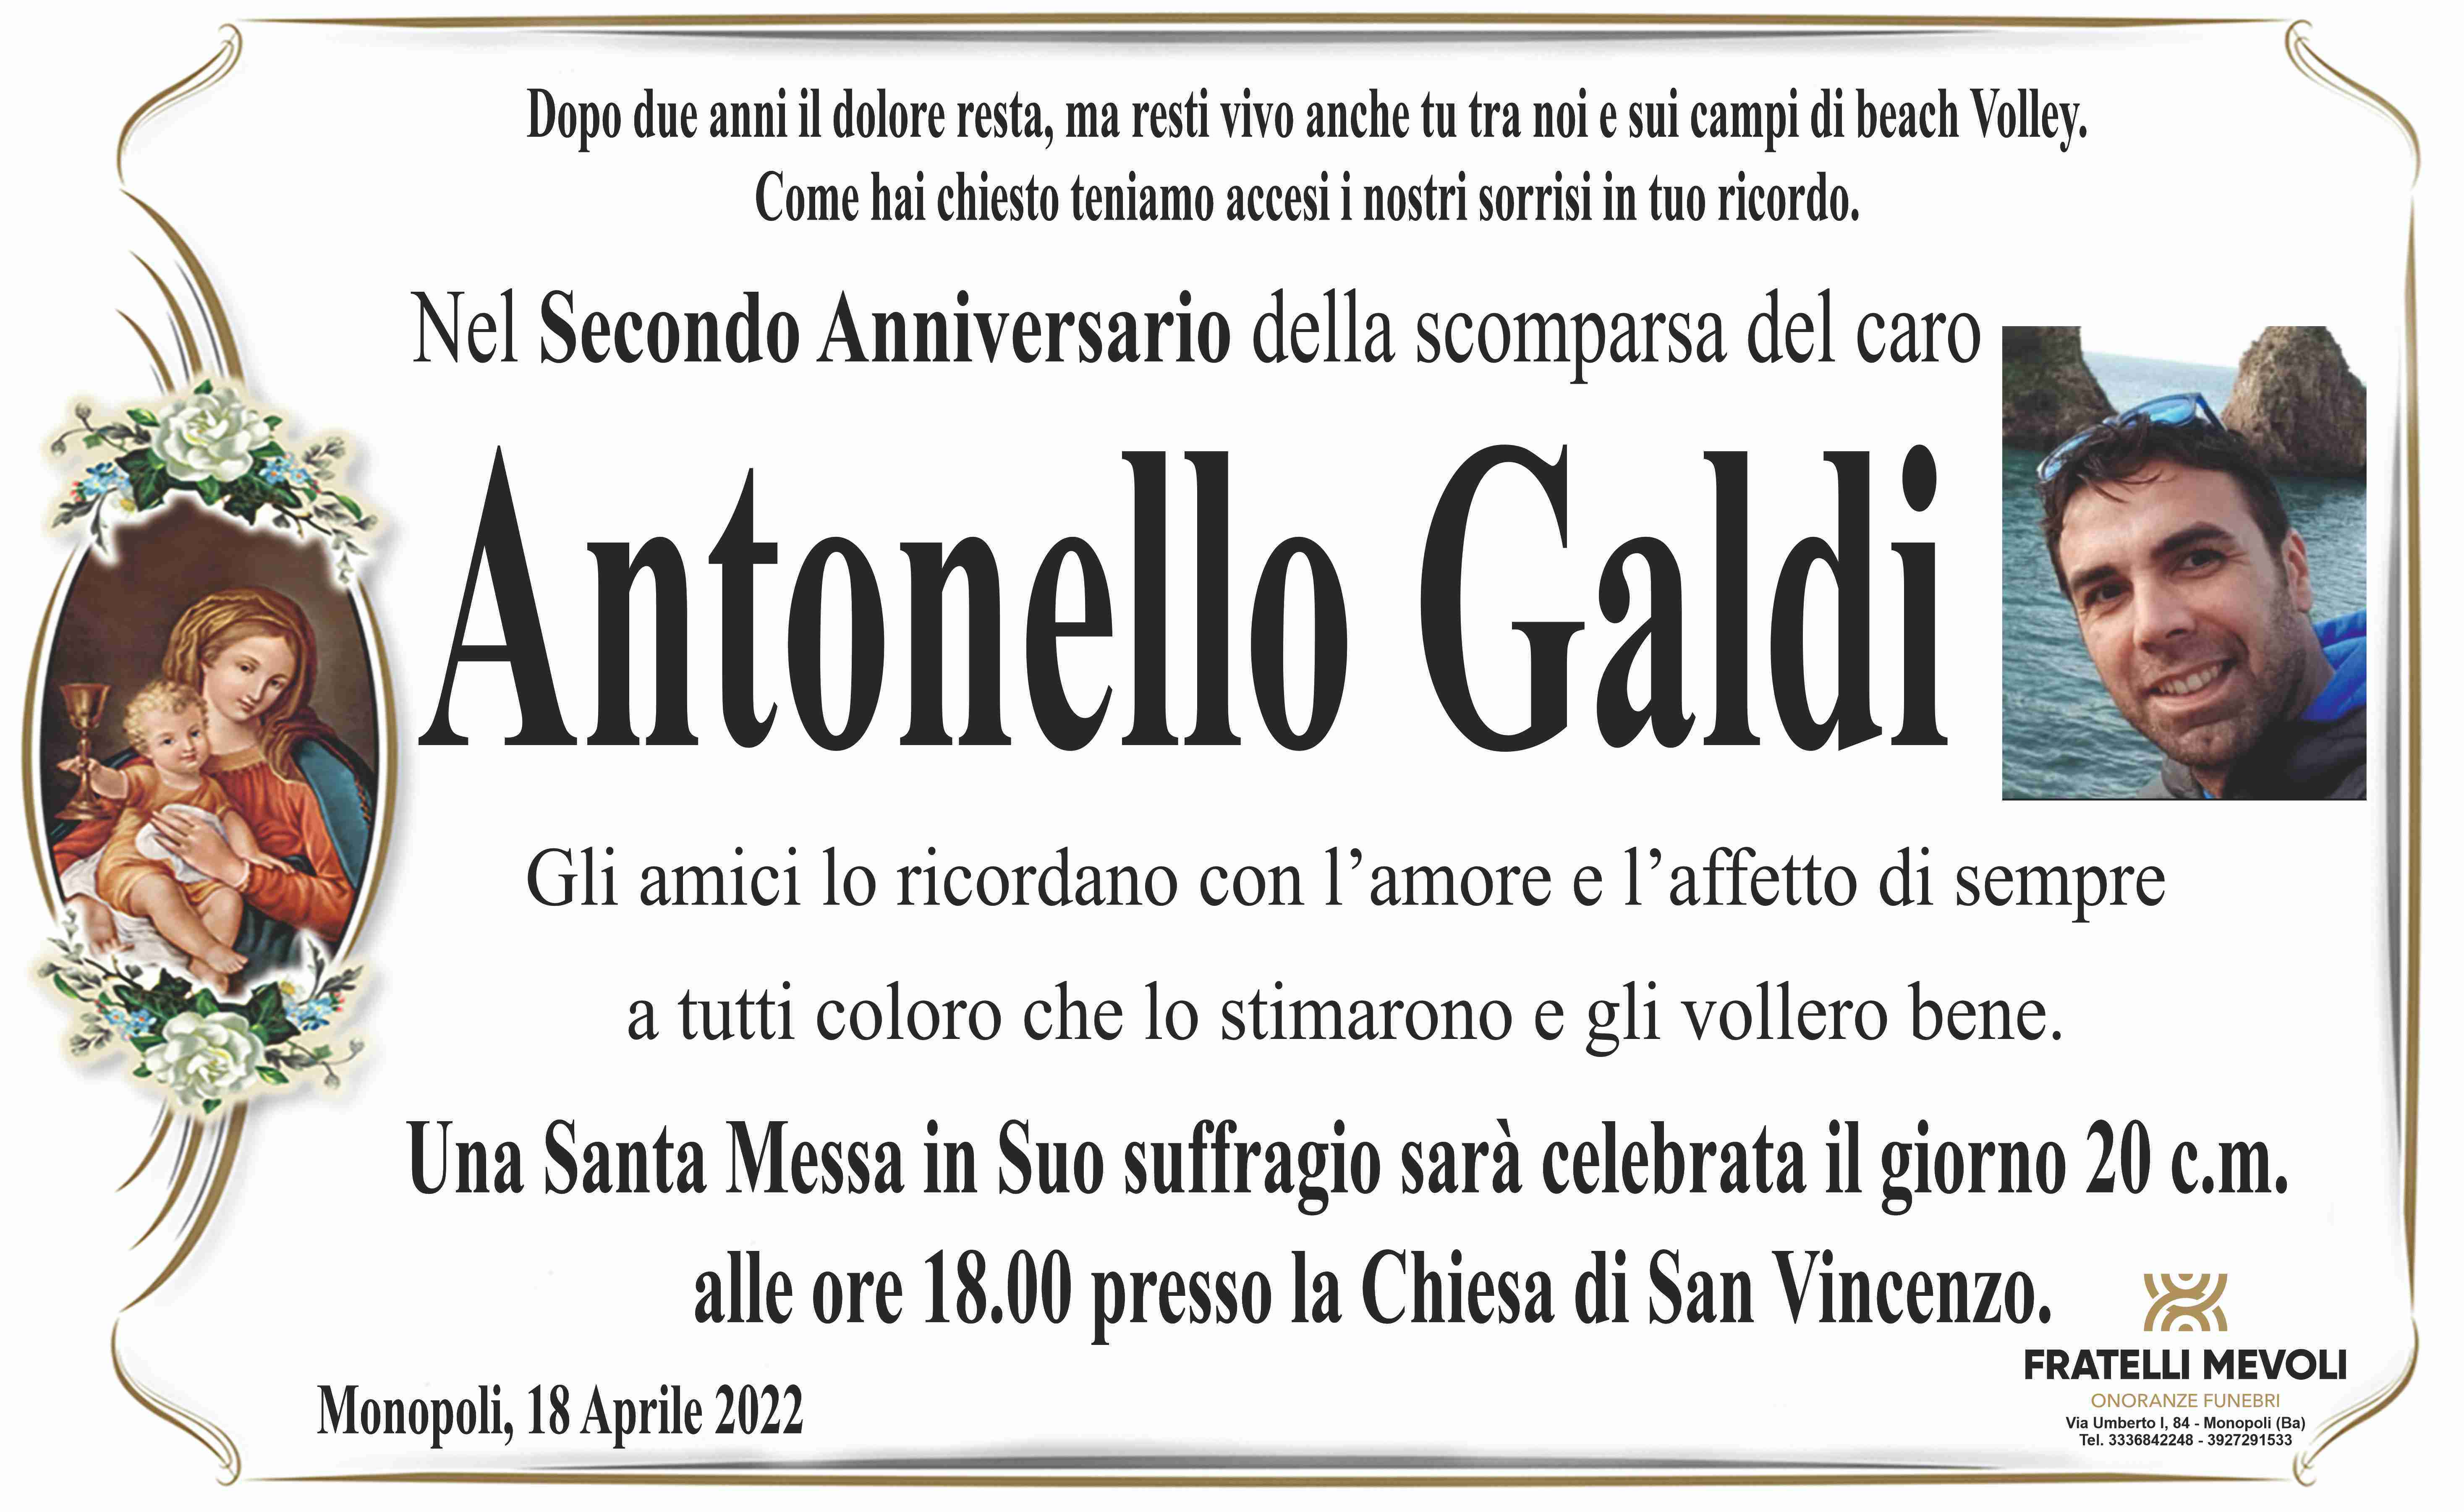 Antonello Galdi